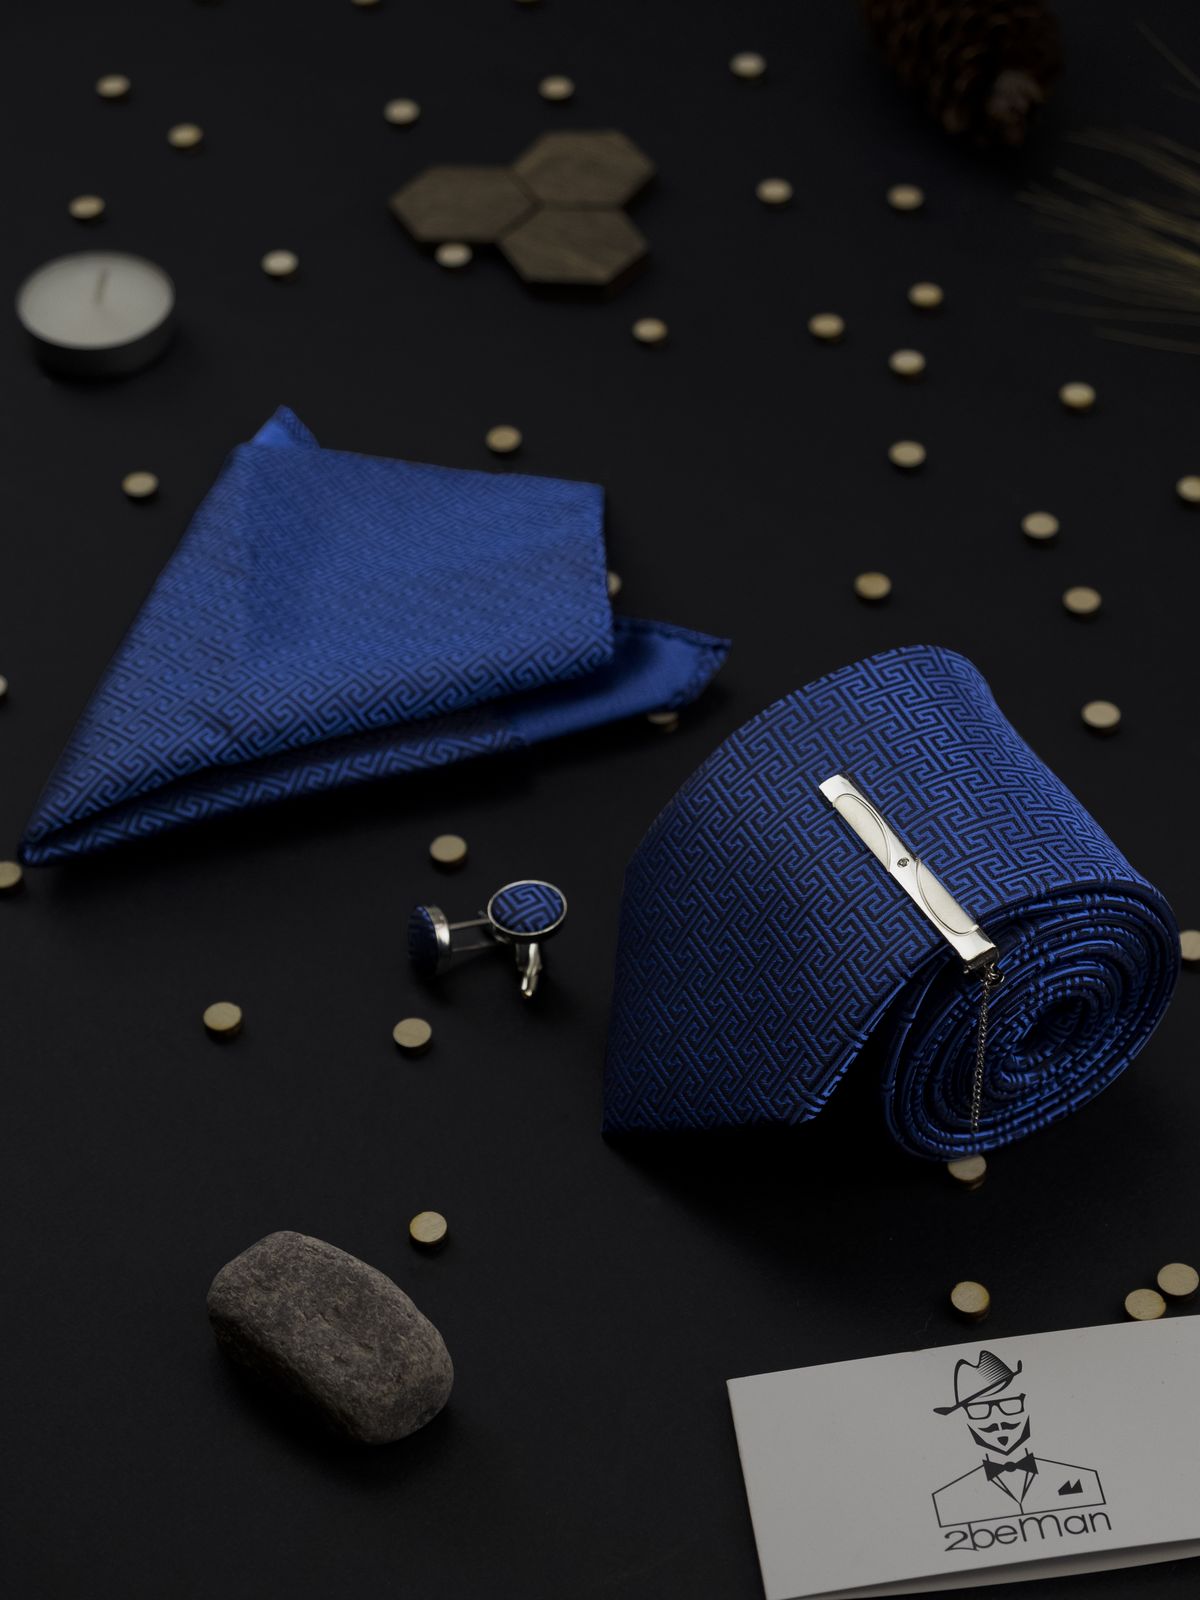 Комплект: галстук, запонки, платок, зажим голубой с орнаментом описание: Материал - Хлопок, Размеры - 8 см х 145 см, Цвет - Голубой, Страна производства - Китай;